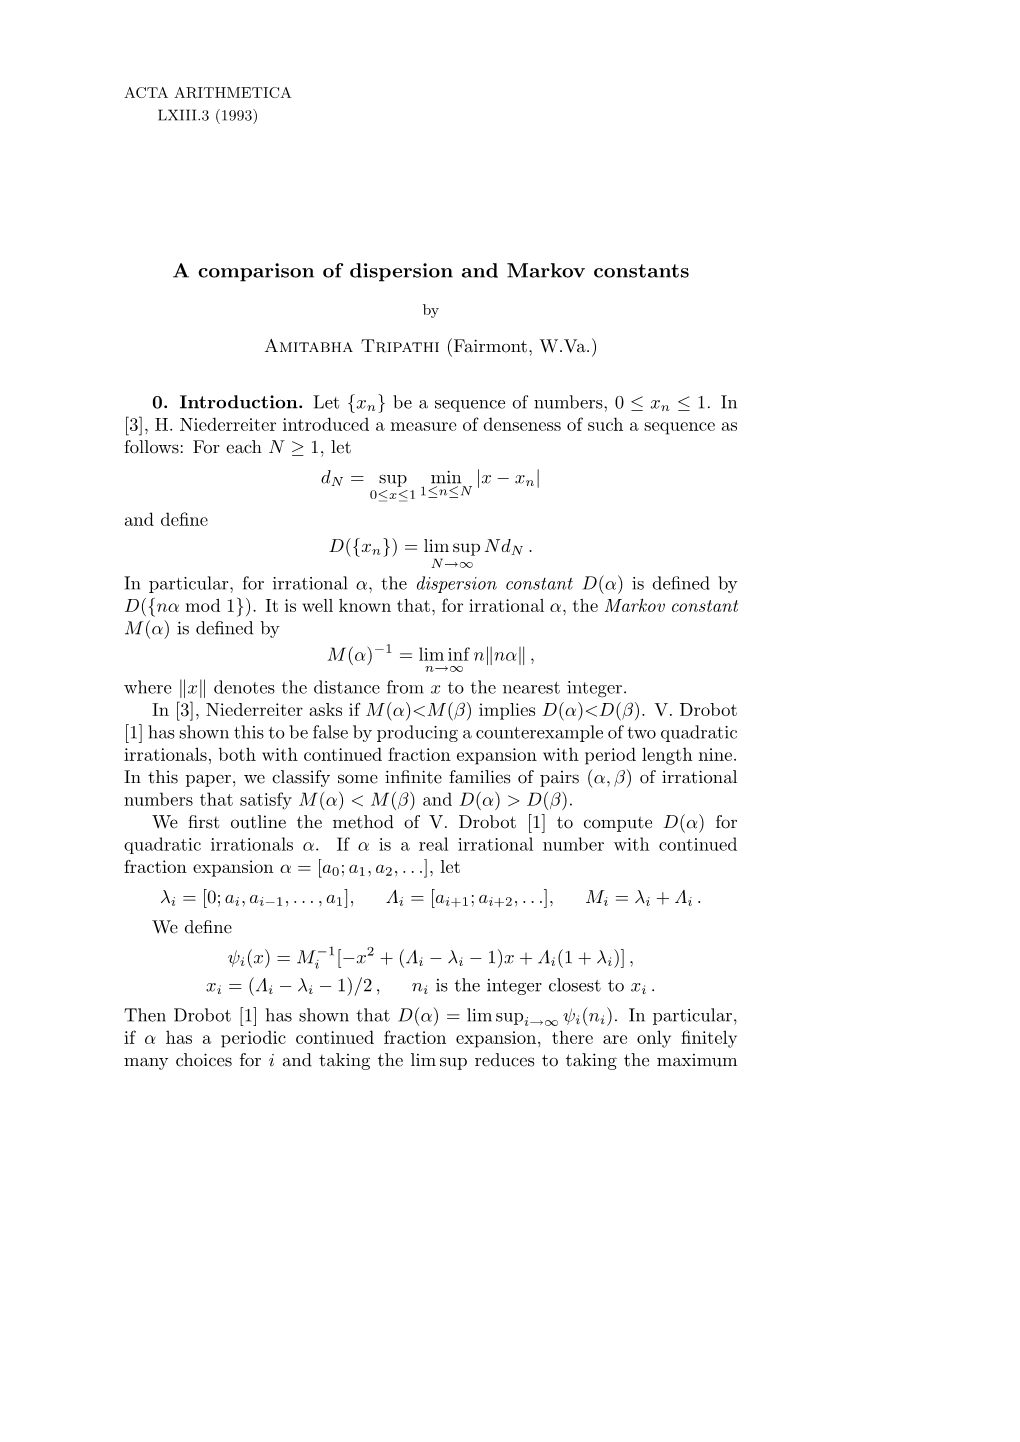 A Comparison of Dispersion and Markov Constants